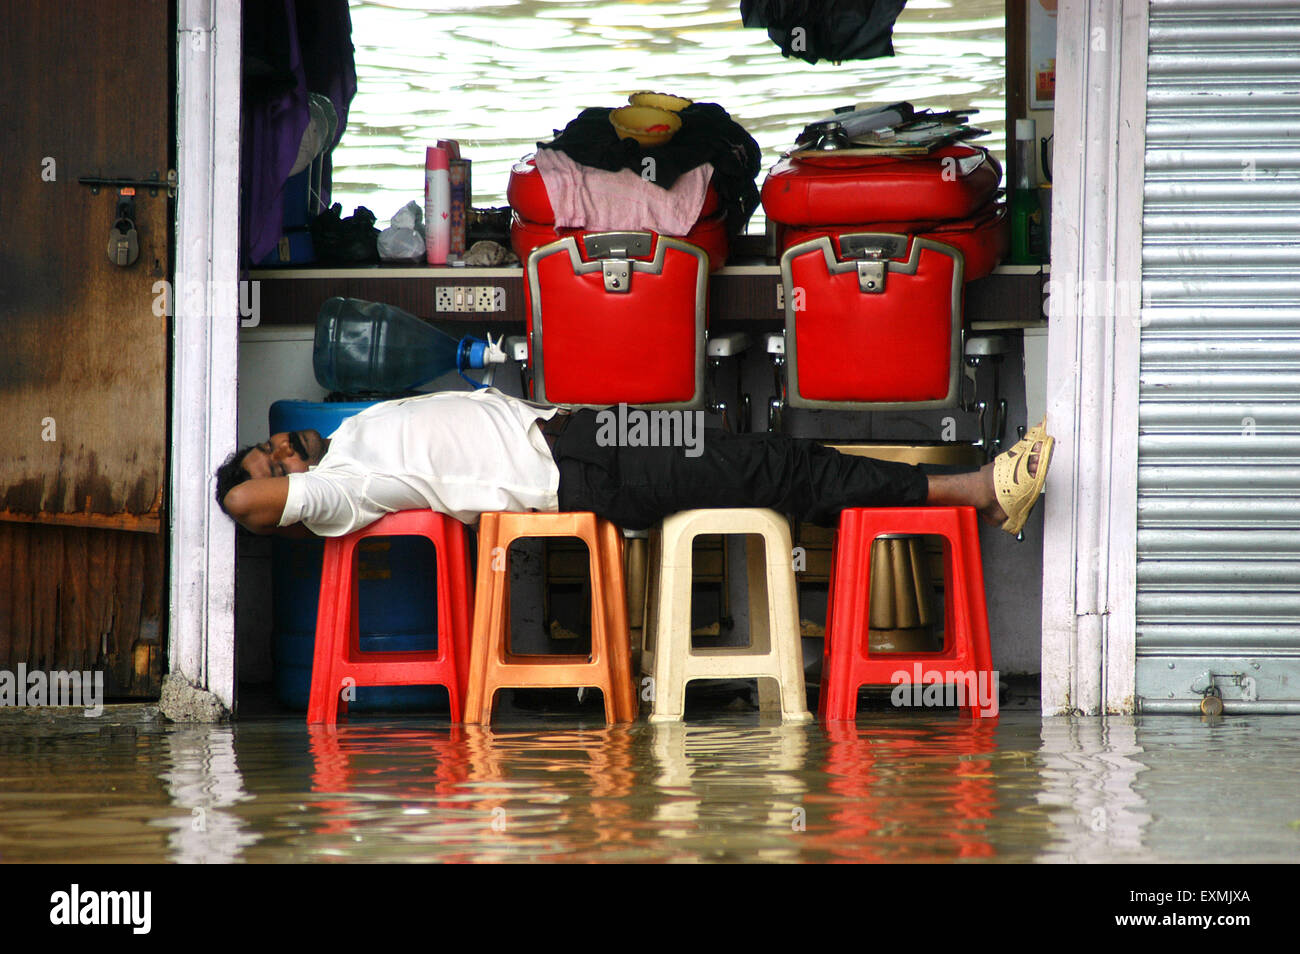 Alluvioni piovose monsoniche, barbiere sommerso allagato strada, Bombay, Mumbai, Maharashtra, India, Asia Foto Stock